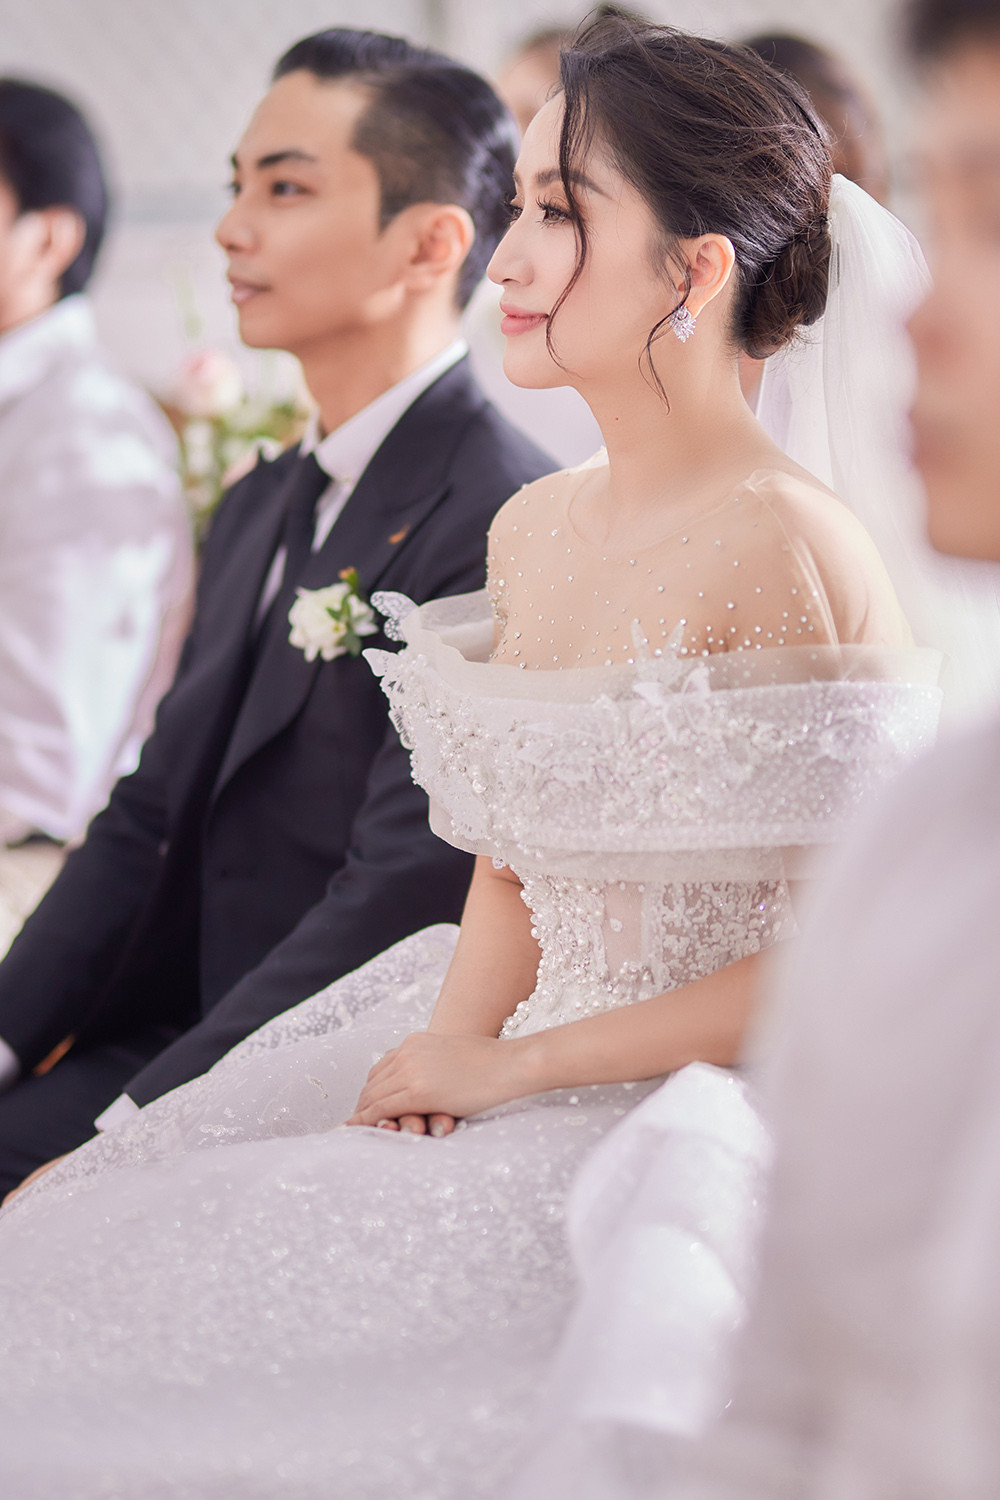 Khánh Thi đẹp lộng lẫy trong hôn lễ tại nhà thờ - 6